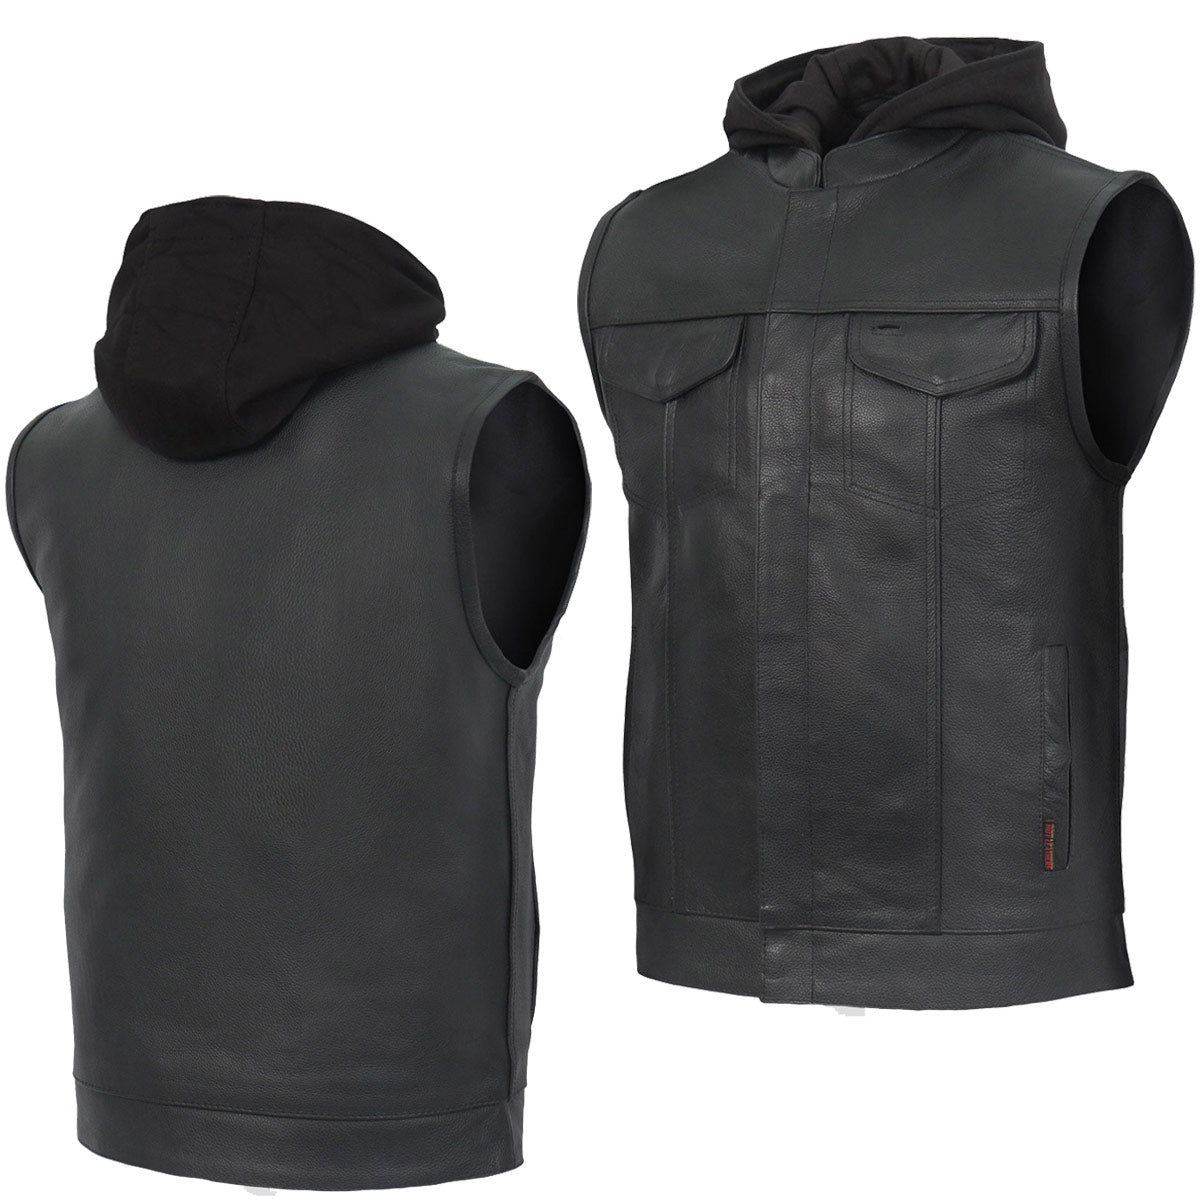 Hot Leathers VSM1201 Men's Black Motorcycle Biker Club Style Vest with Hoodie